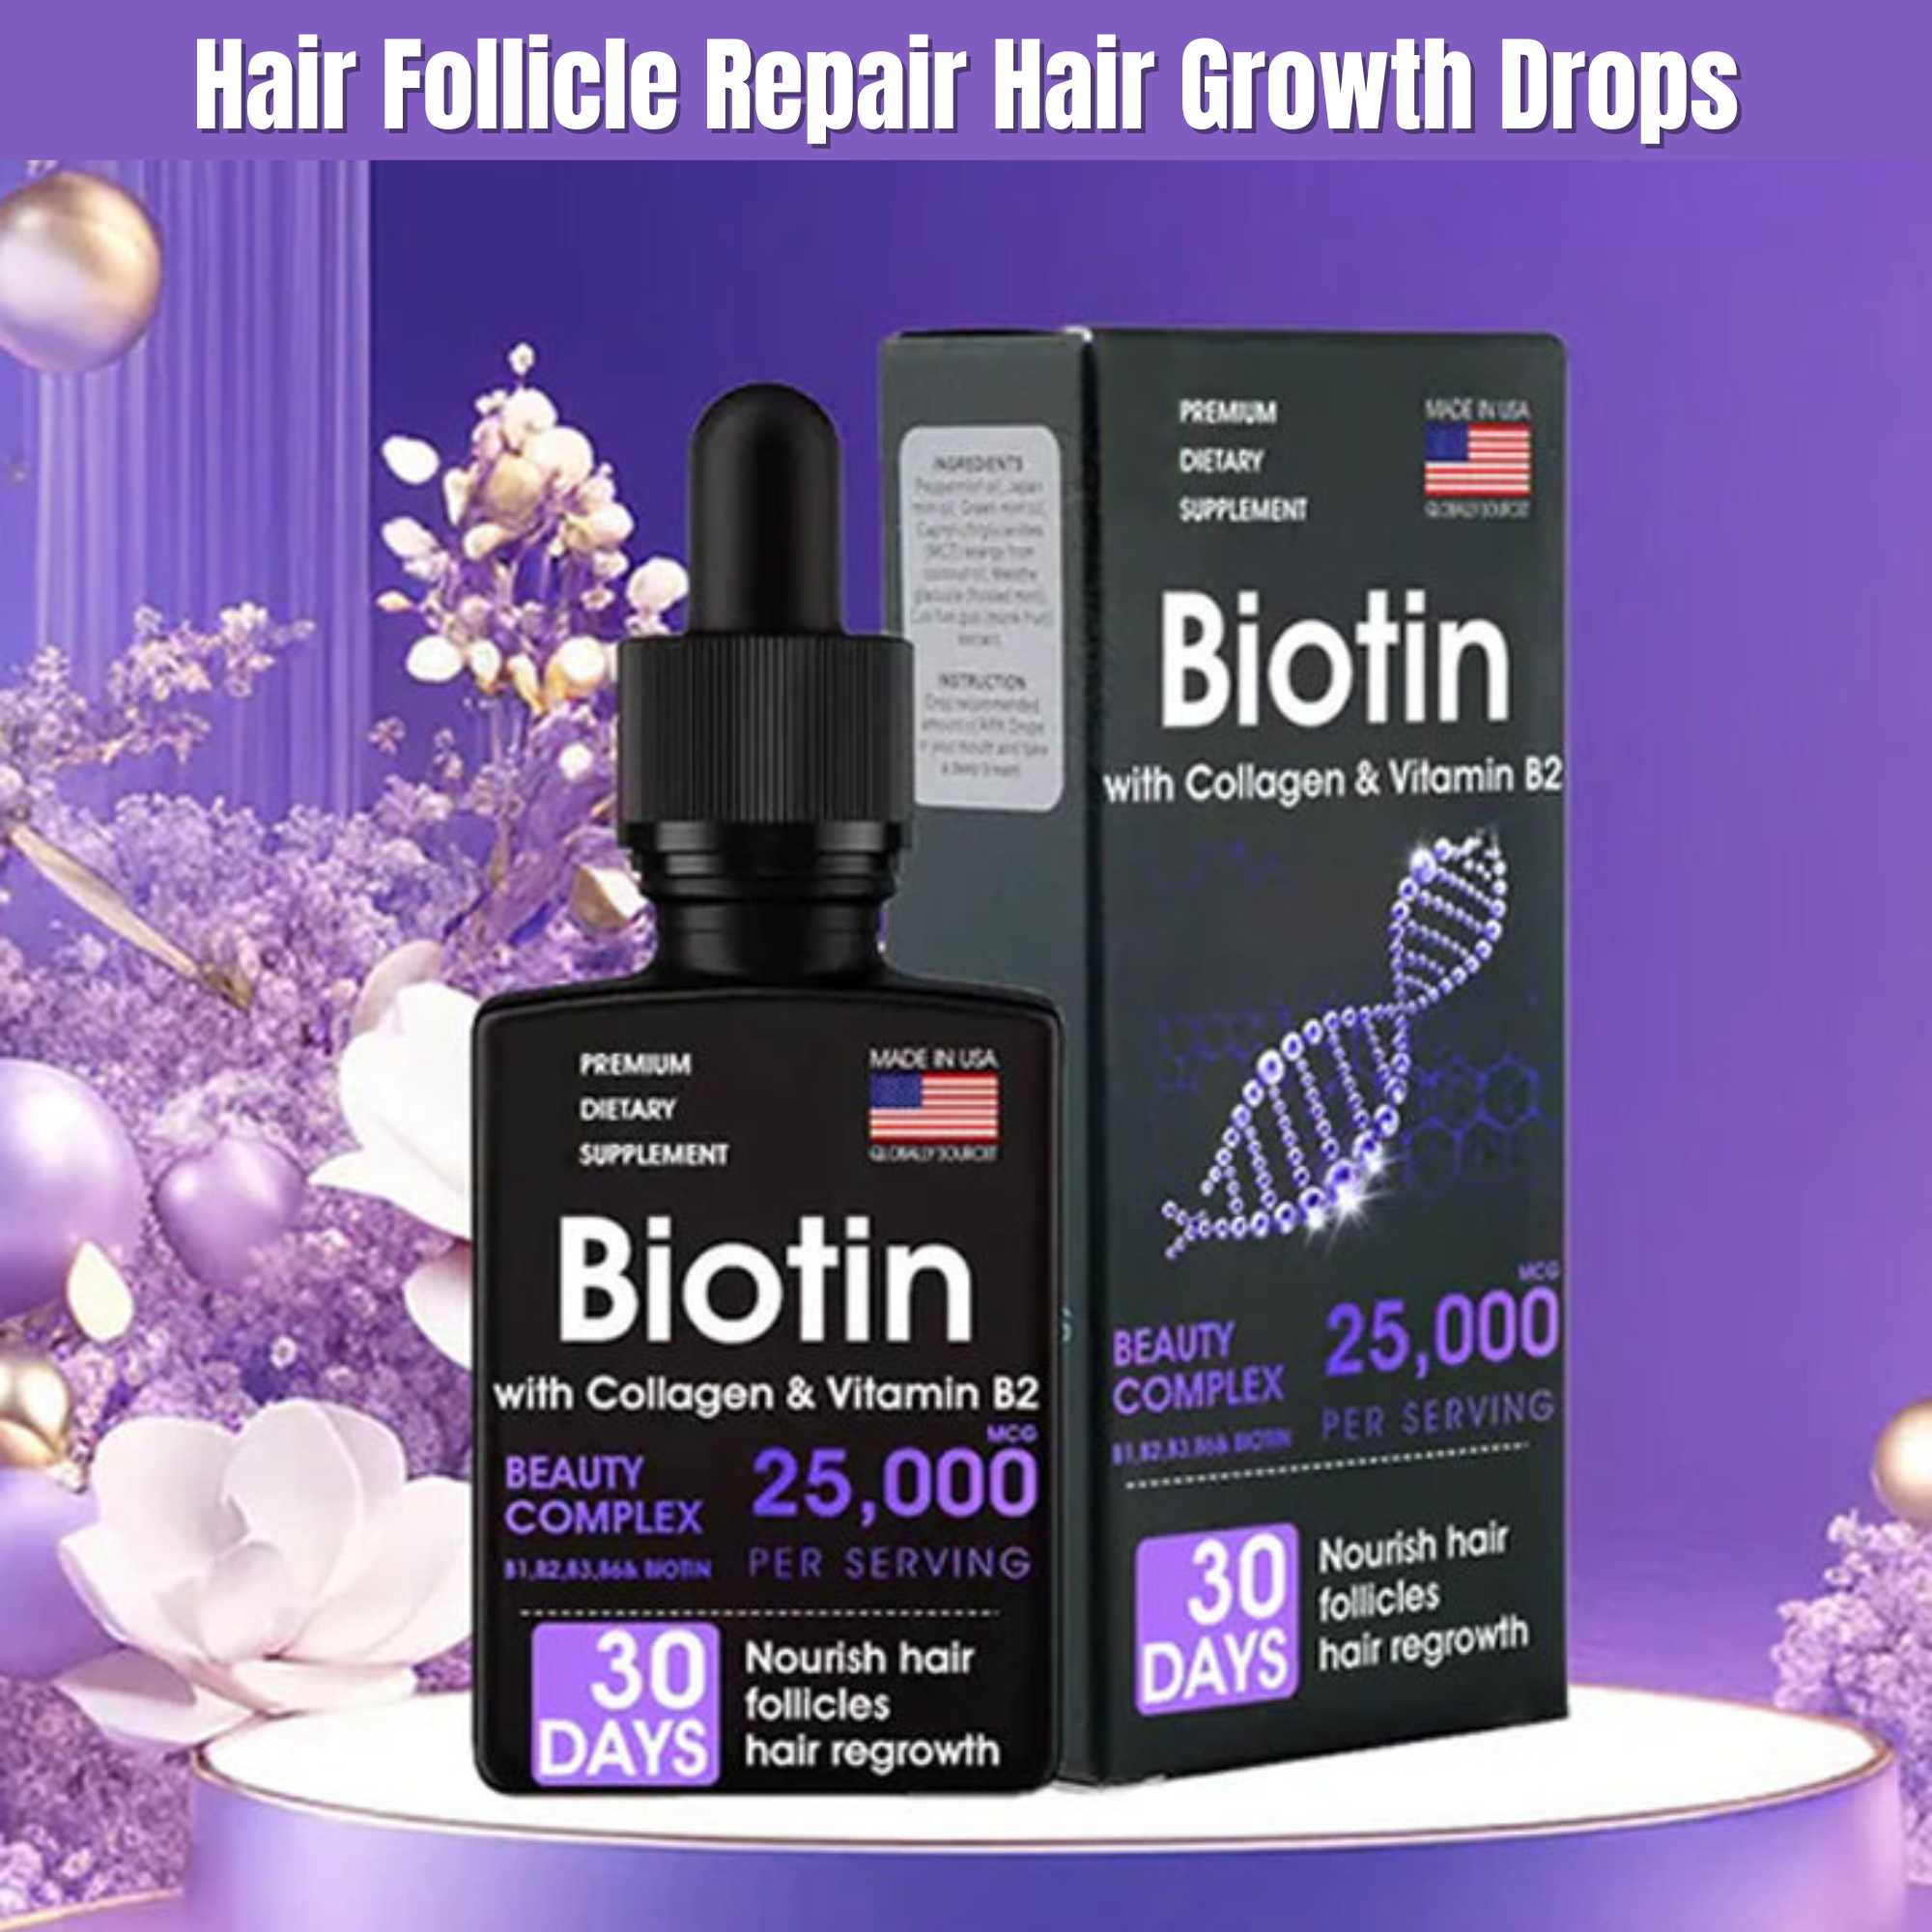 Hair Follicle Repair Hair Growth Drops